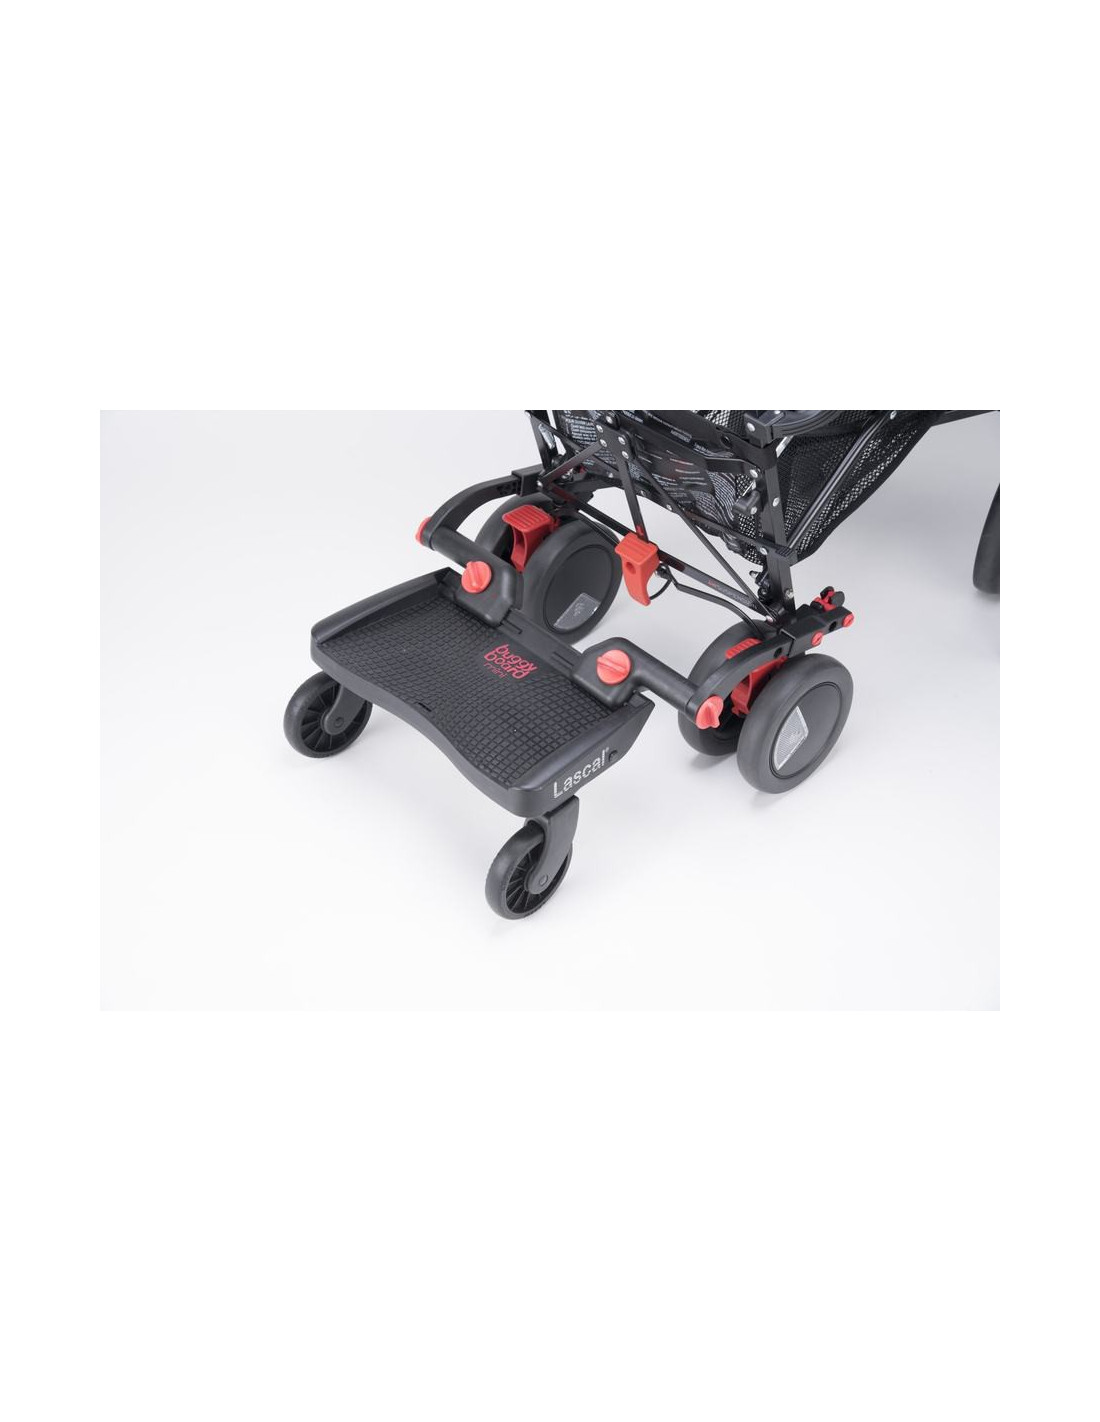 Lascal 2830 Tabla con ruedas para carrito color negro Buggy Board Mini 